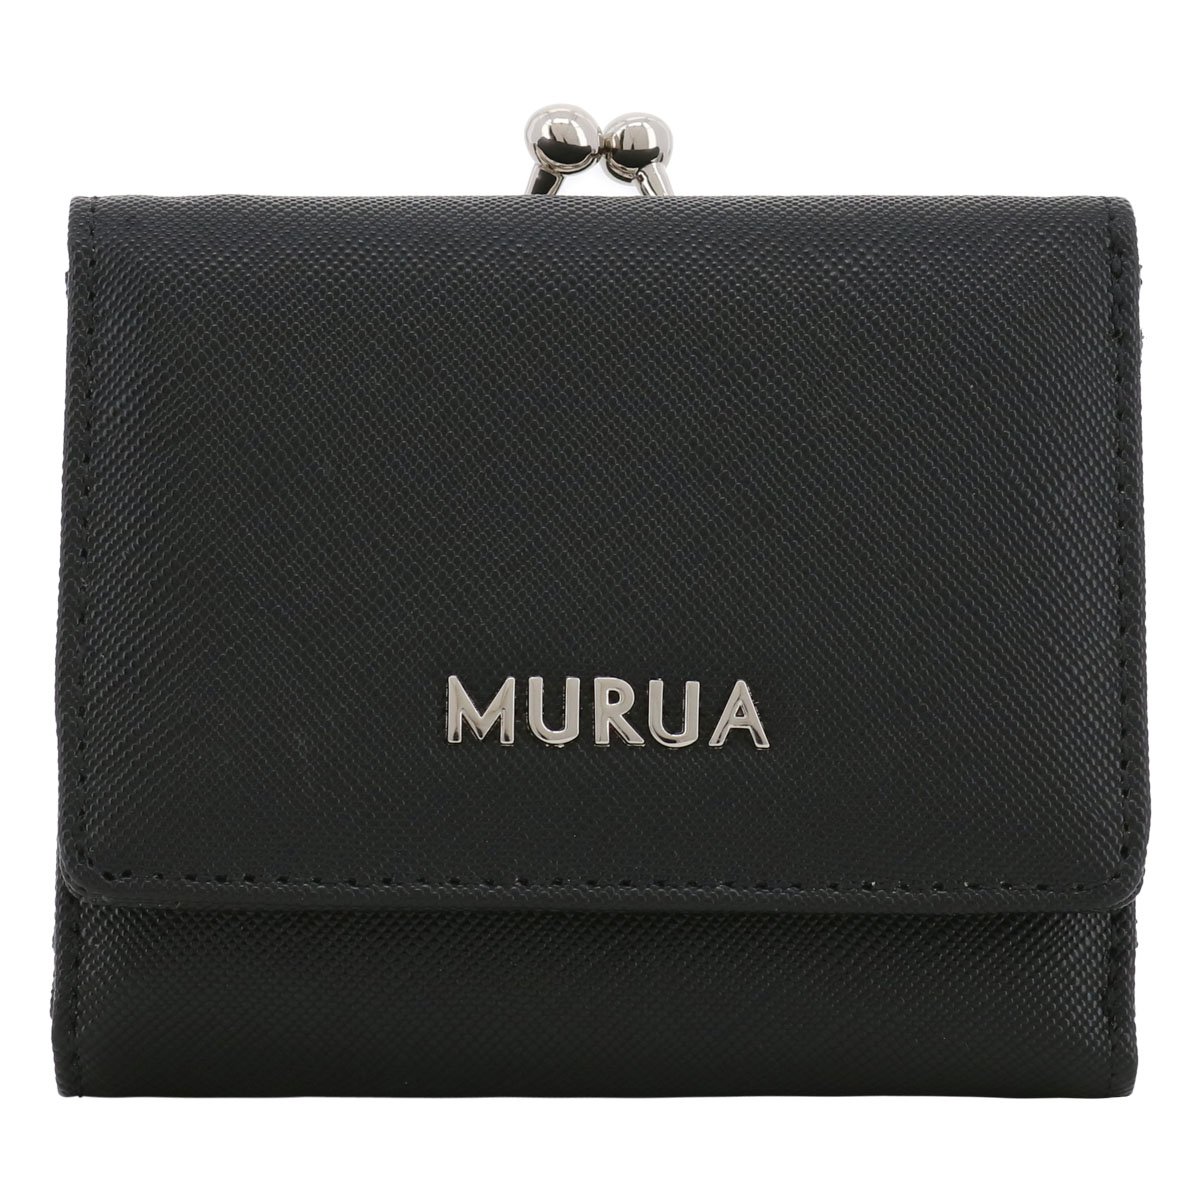 ムルーア 財布 三つ折り がま口 レディース MR-W1142 PLAIN MURUA 三つ折り財布...